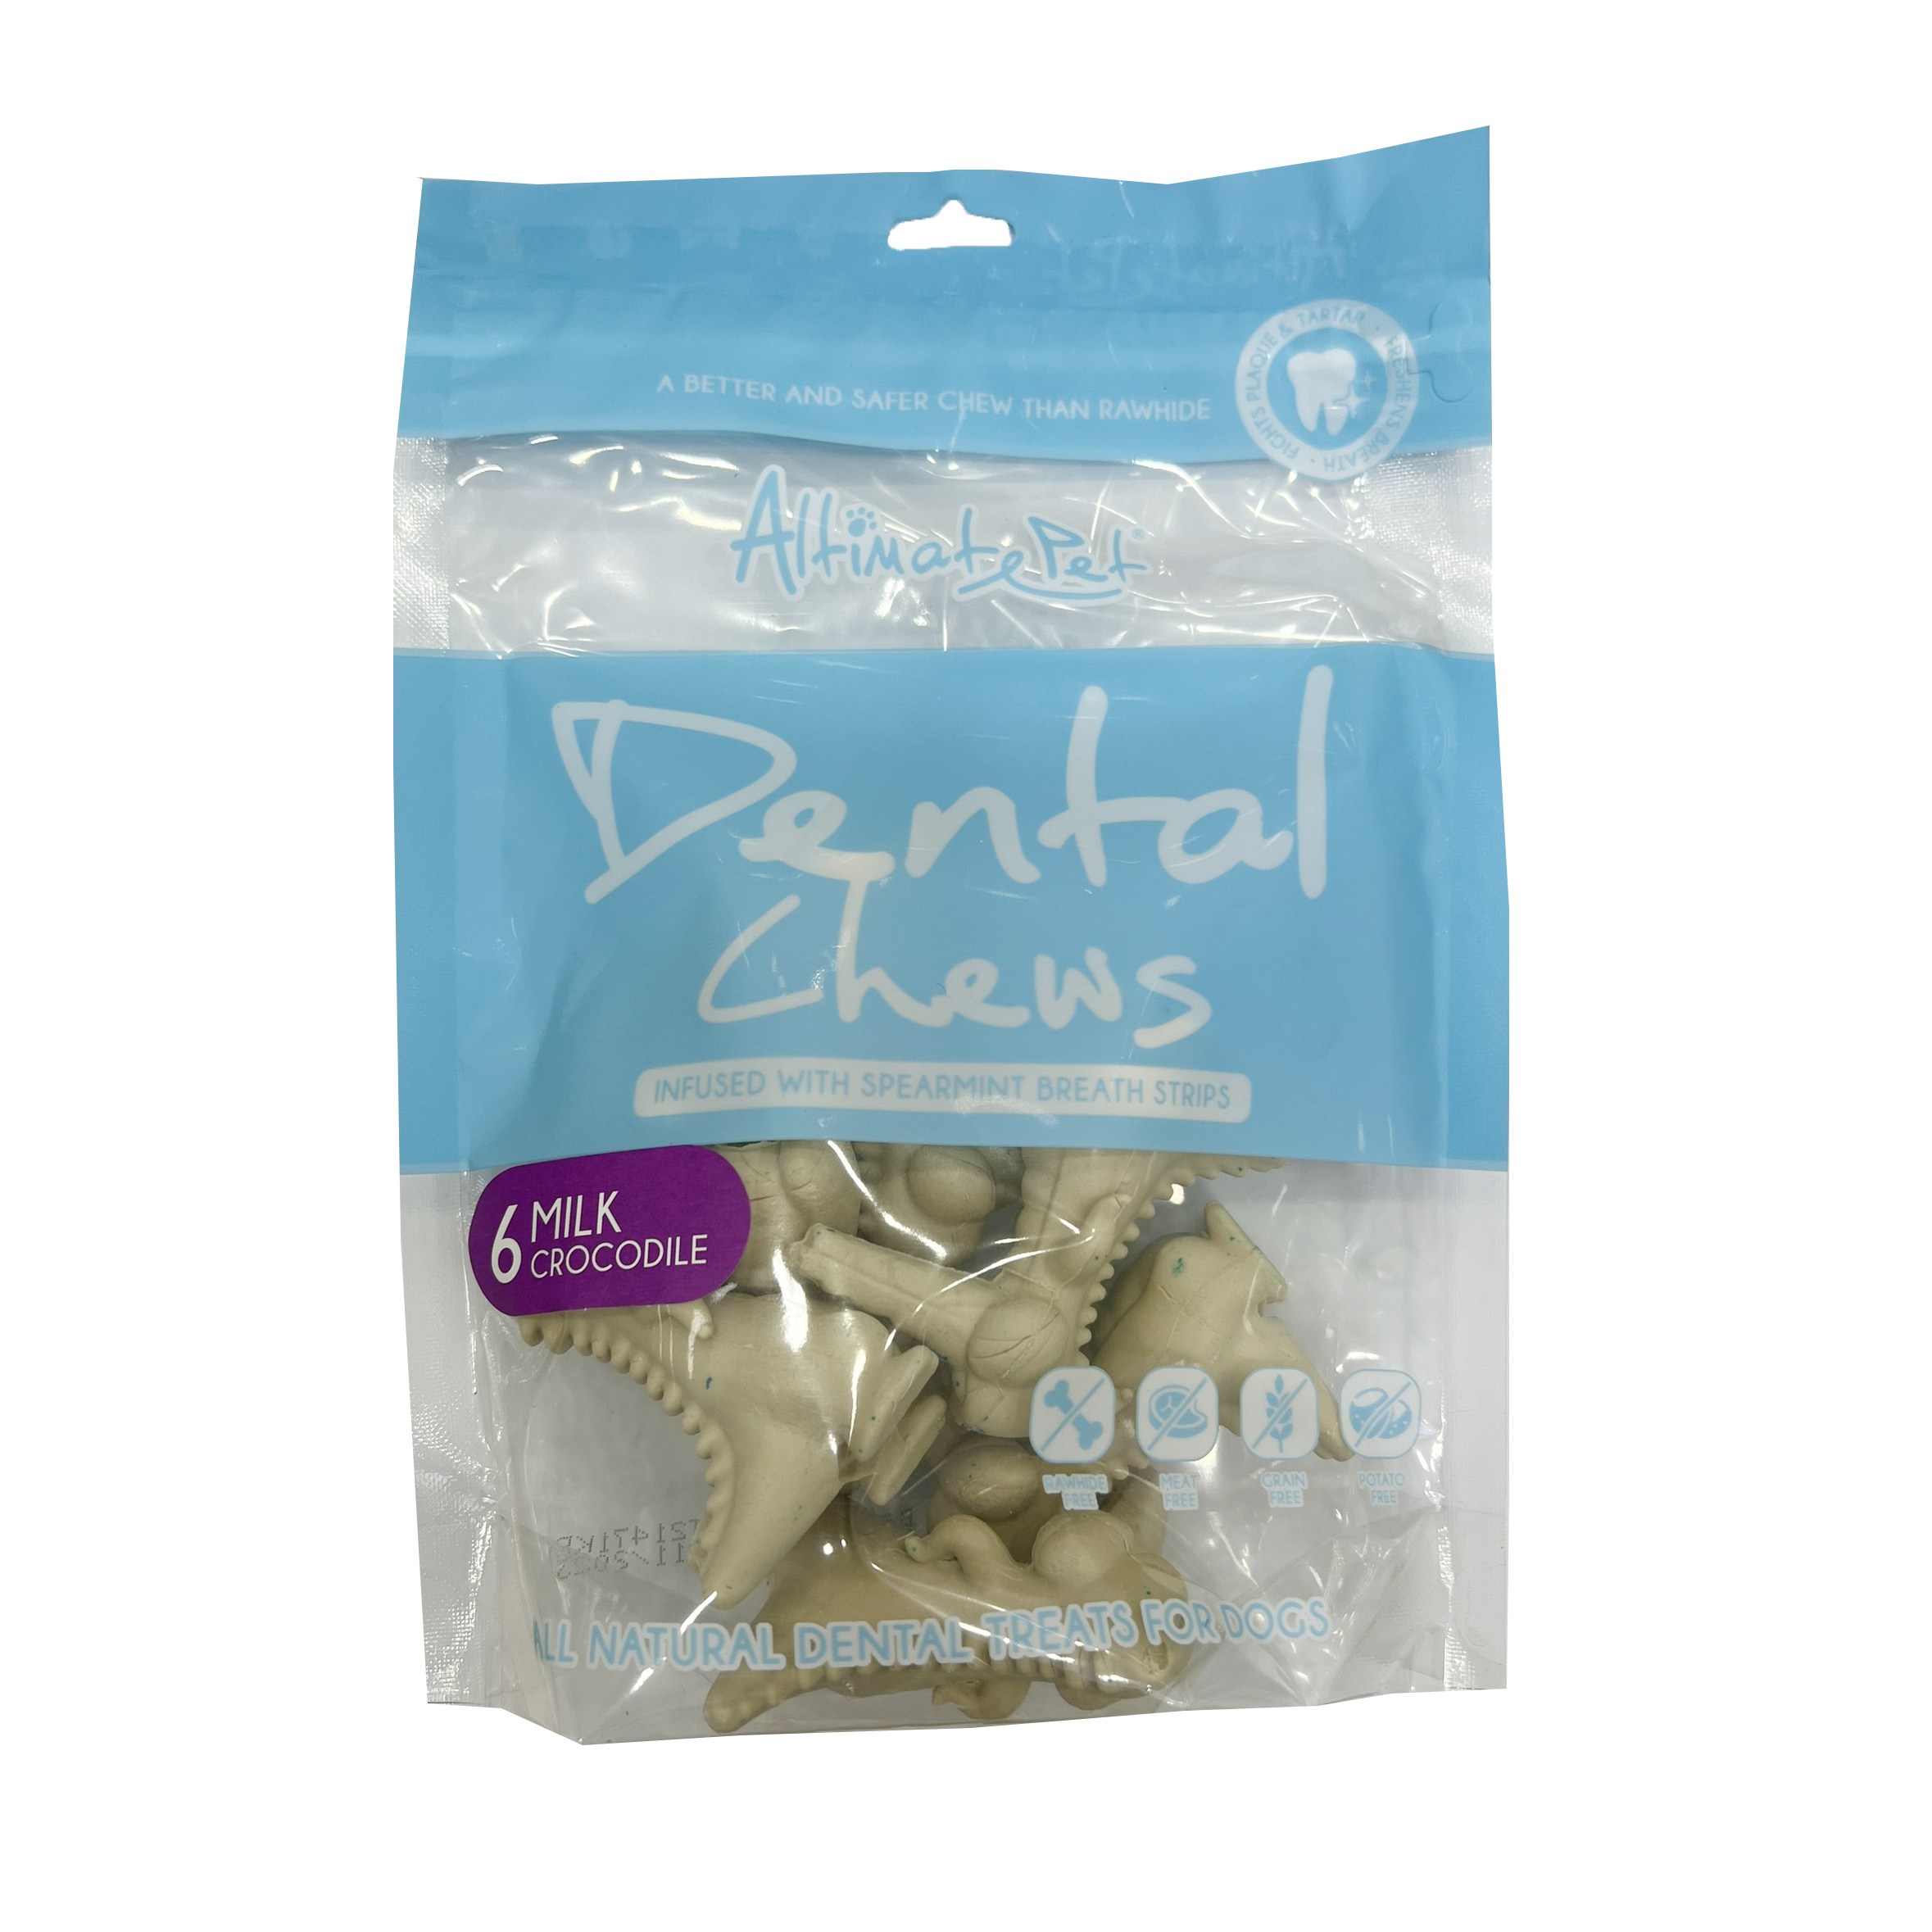 Xương Sạch Răng Altimate Pet Dental Chews (Cá sấu vị sữa 6 xương)